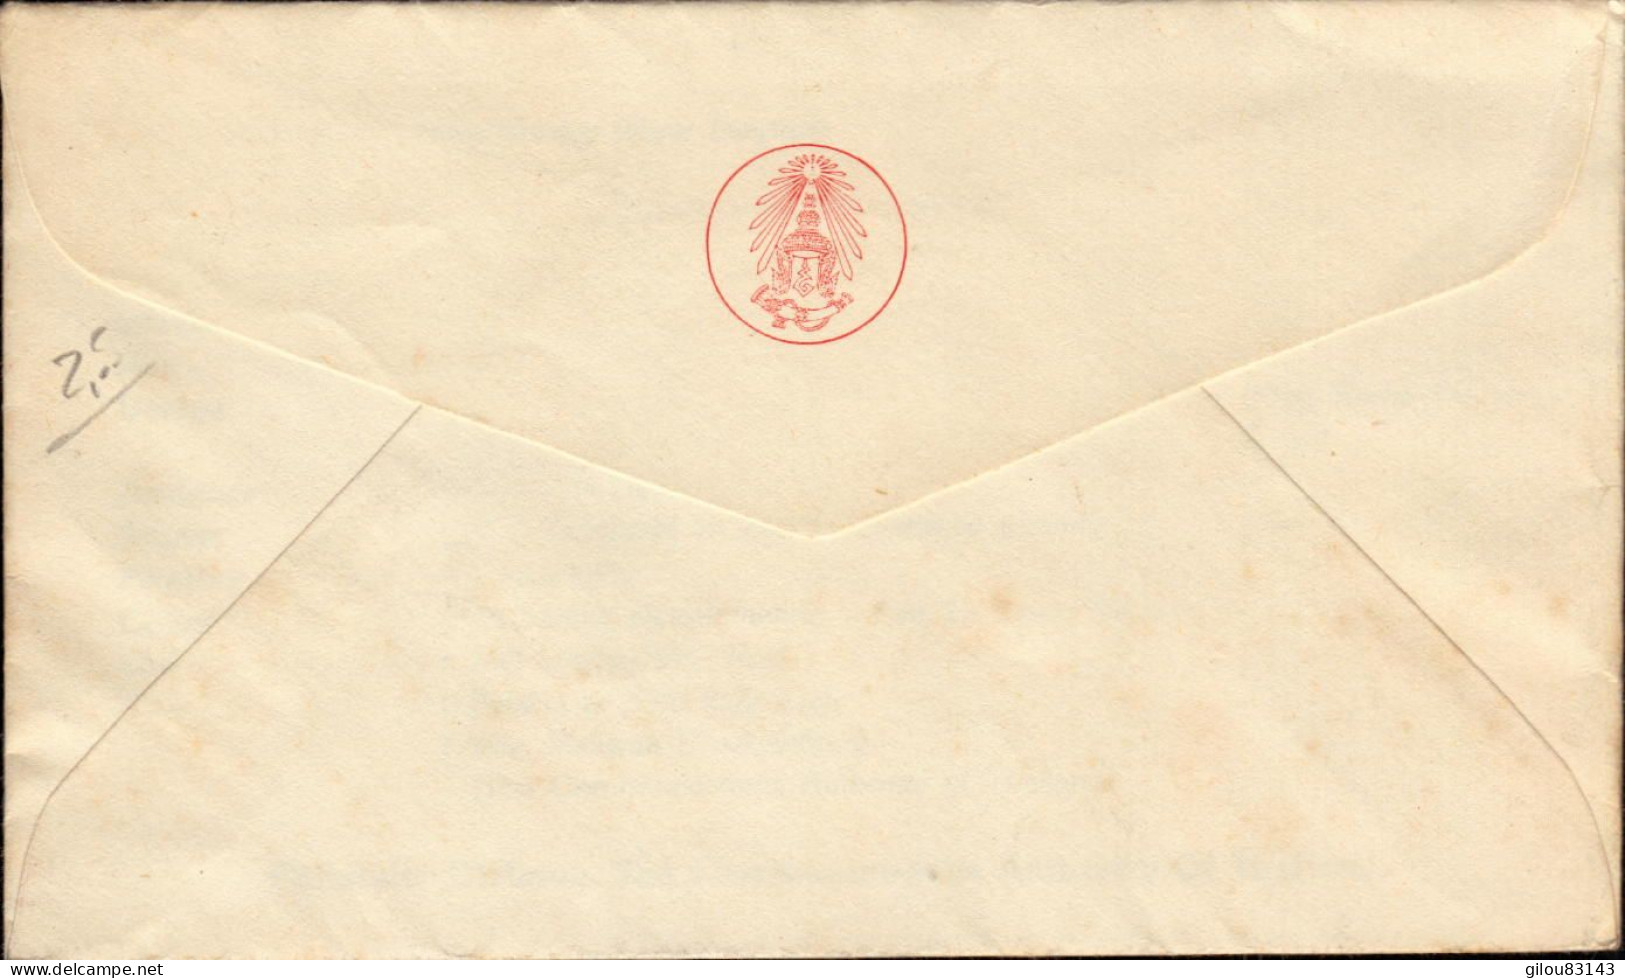 Thailand, Postage Stamp, Fine Arts Departement, Bangkok - Thailand